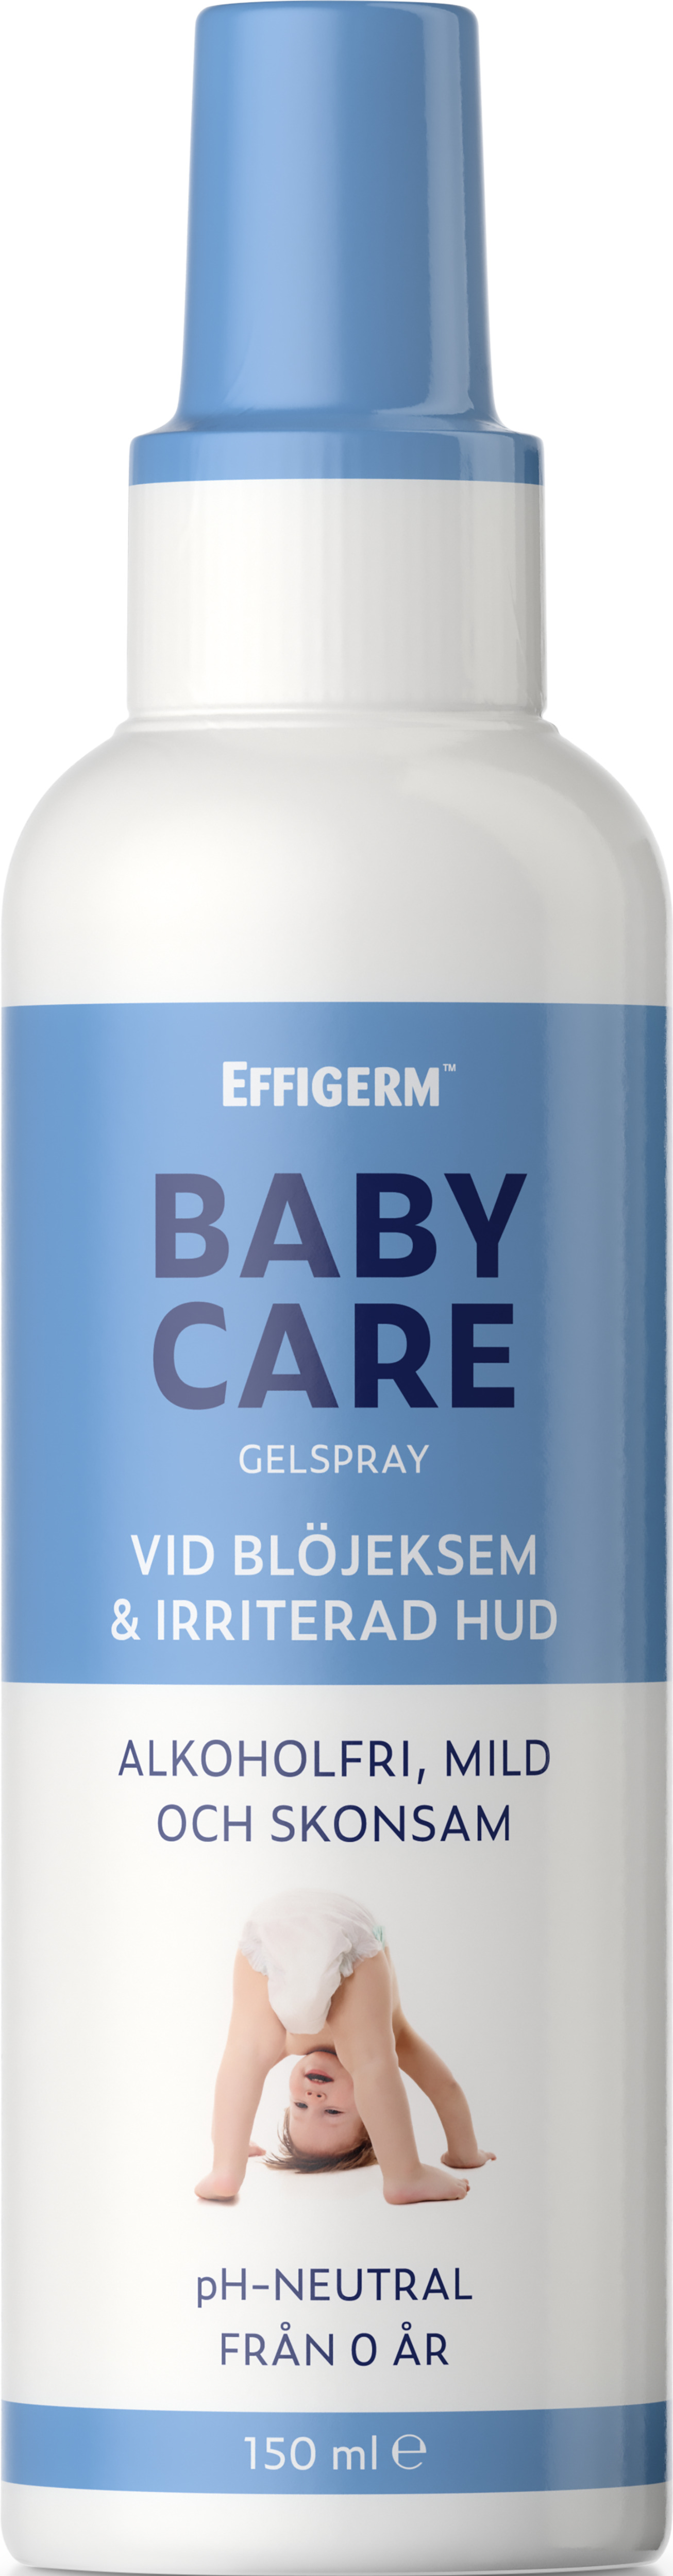 EFFIGERM Baby Care Gelspray 150 ml